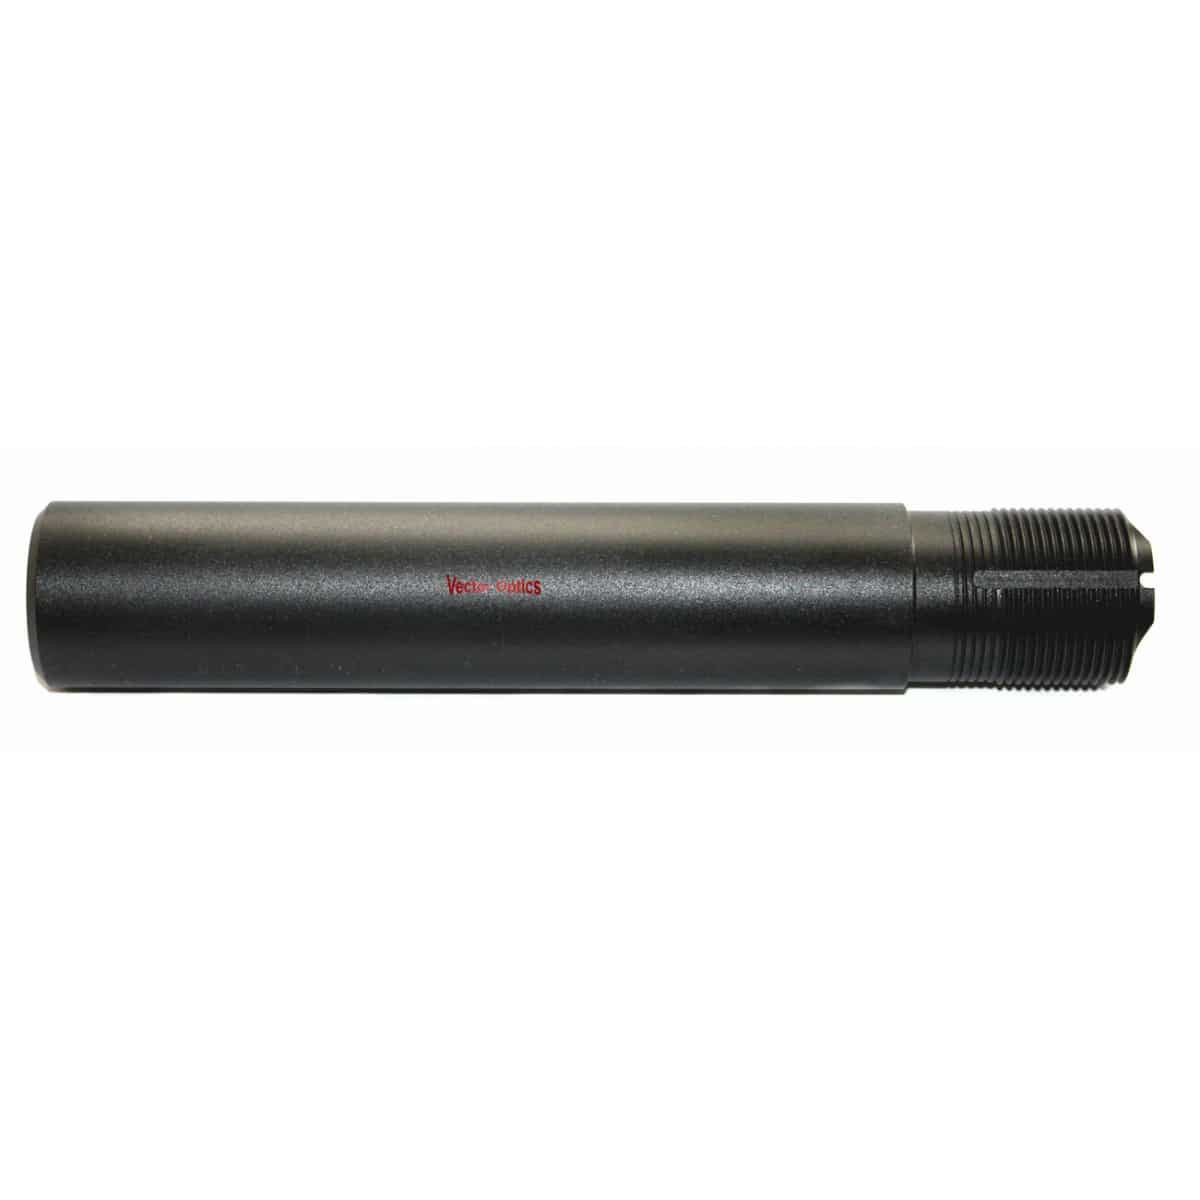 AR Pistol Buffer Tube Kit